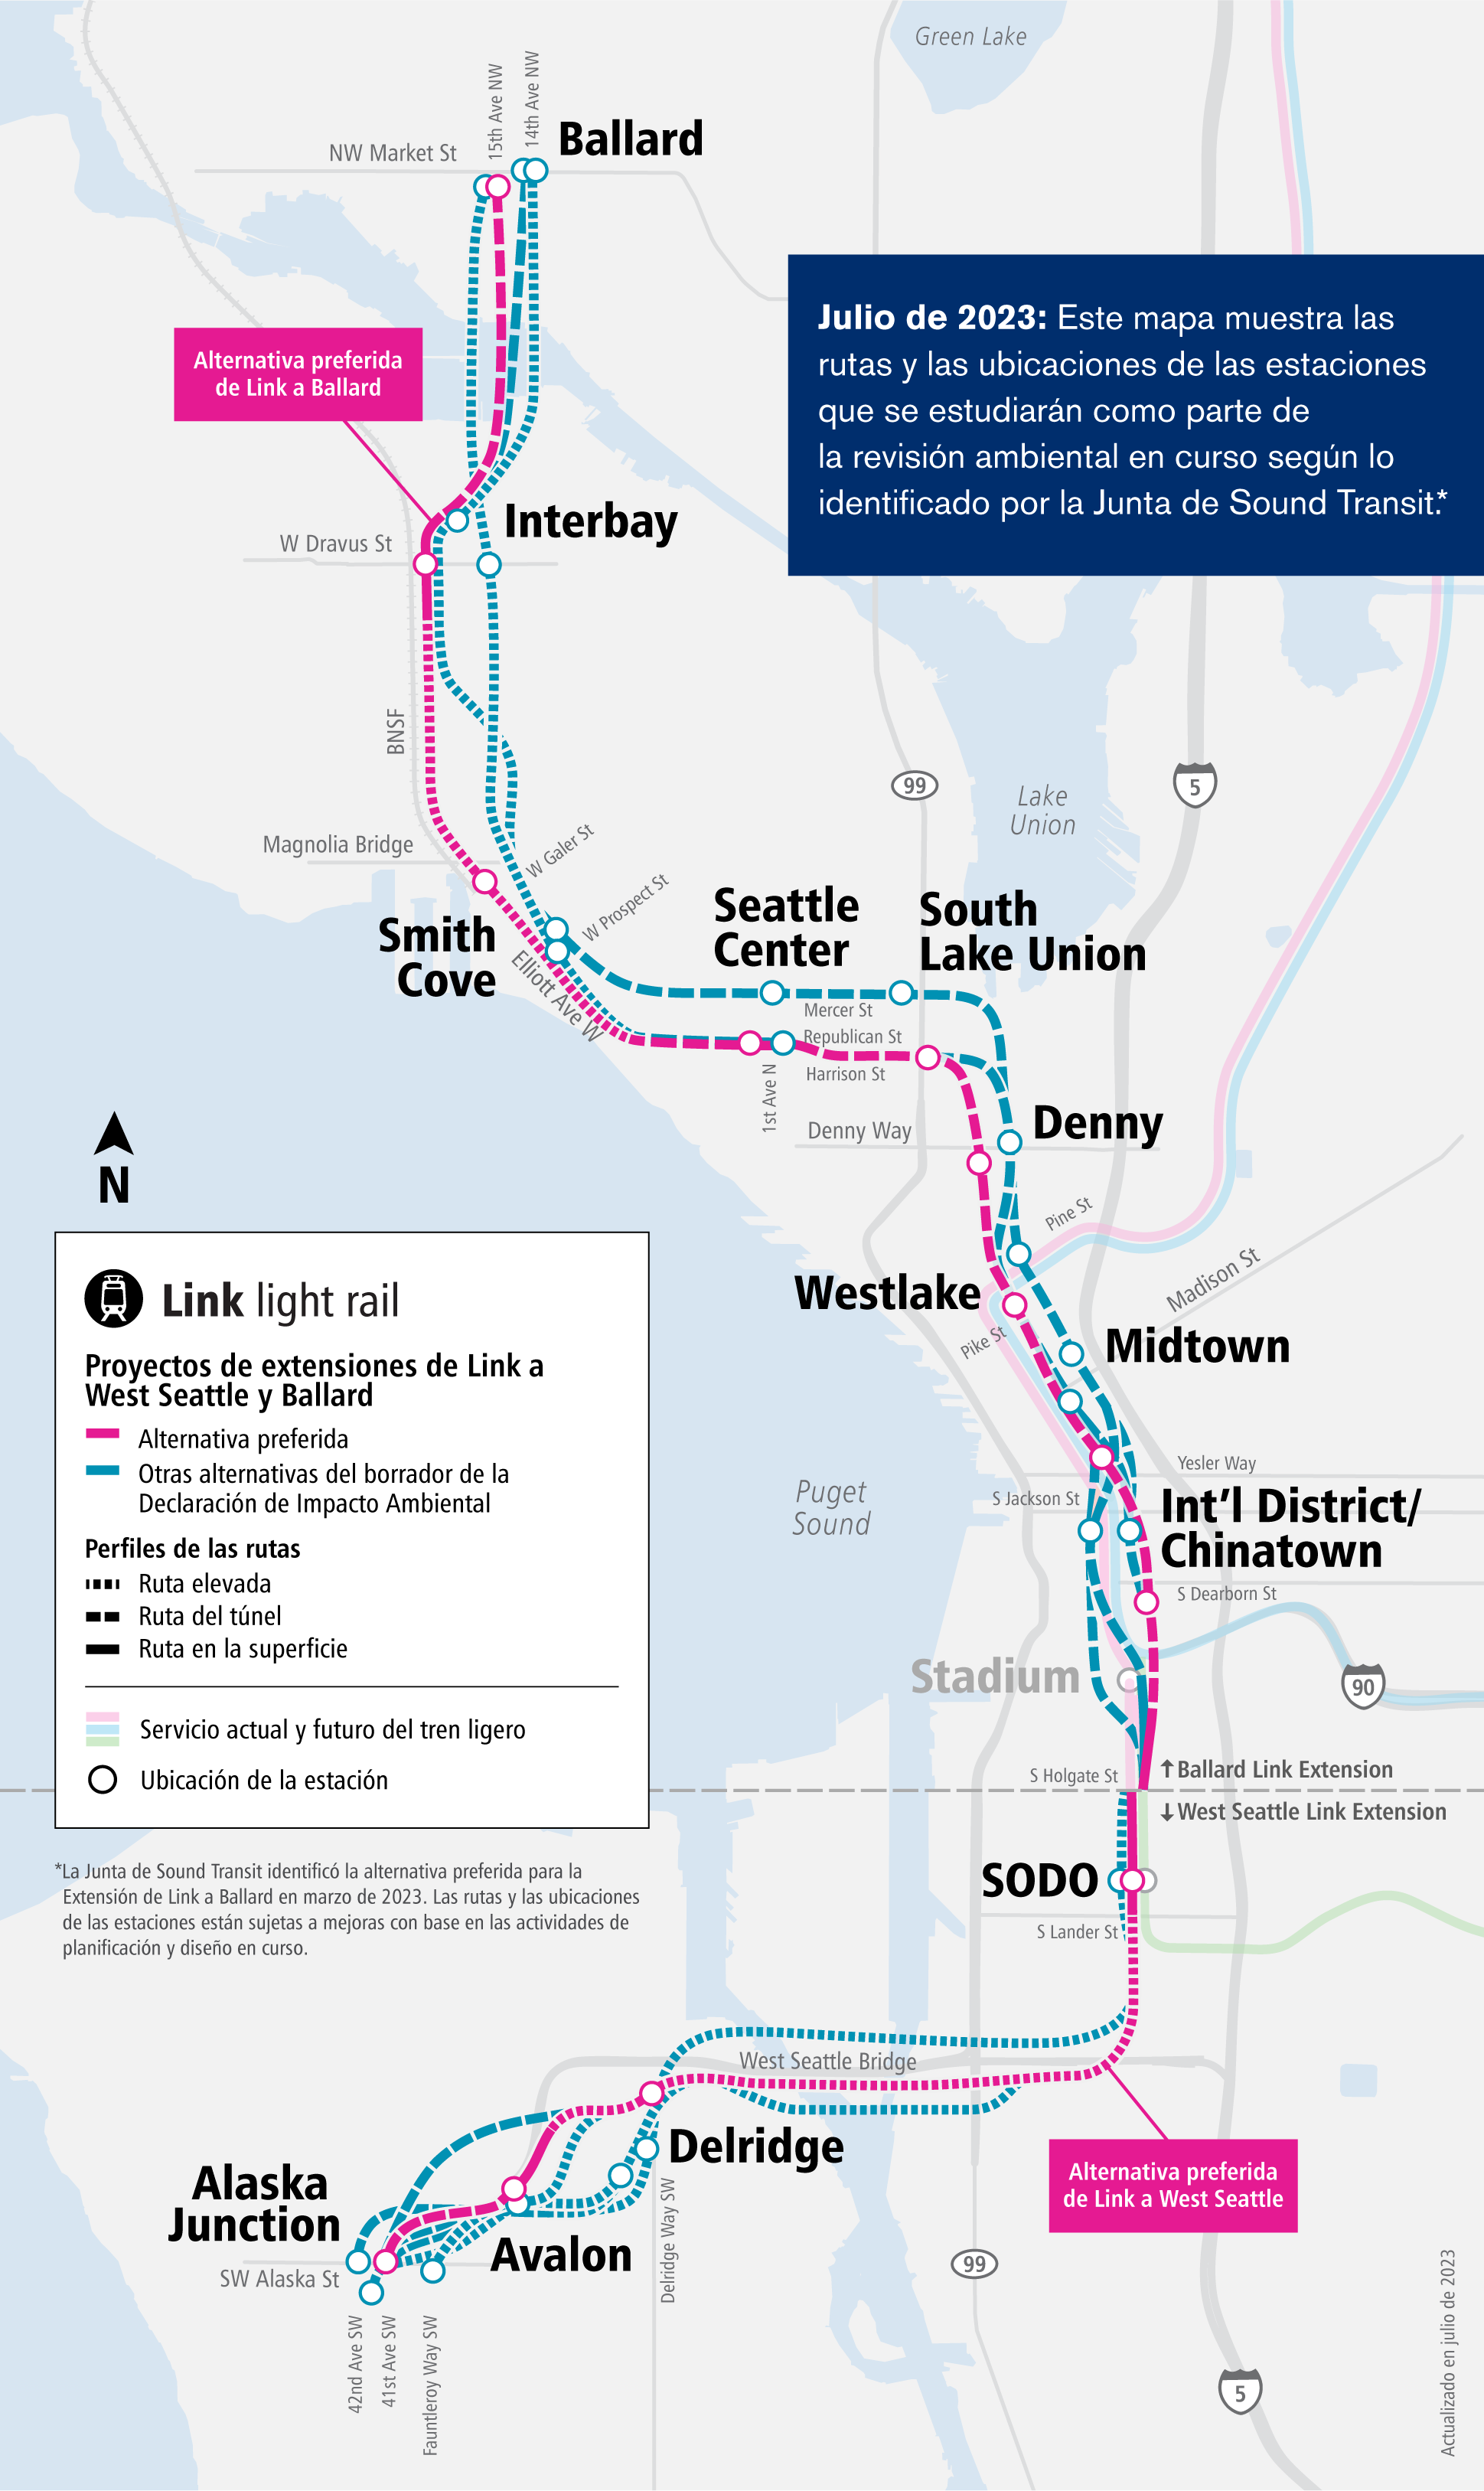 Una imagen del mapa del proyecto de las extensiones de Link a West Seattle y Ballard que muestra las alternativas preferidas y otras alternativas que estamos evaluando actualmente. El mapa también incluye las ubicaciones de las estaciones, y describe si una alternativa está elevada, en túnel o a nivel de calle. />